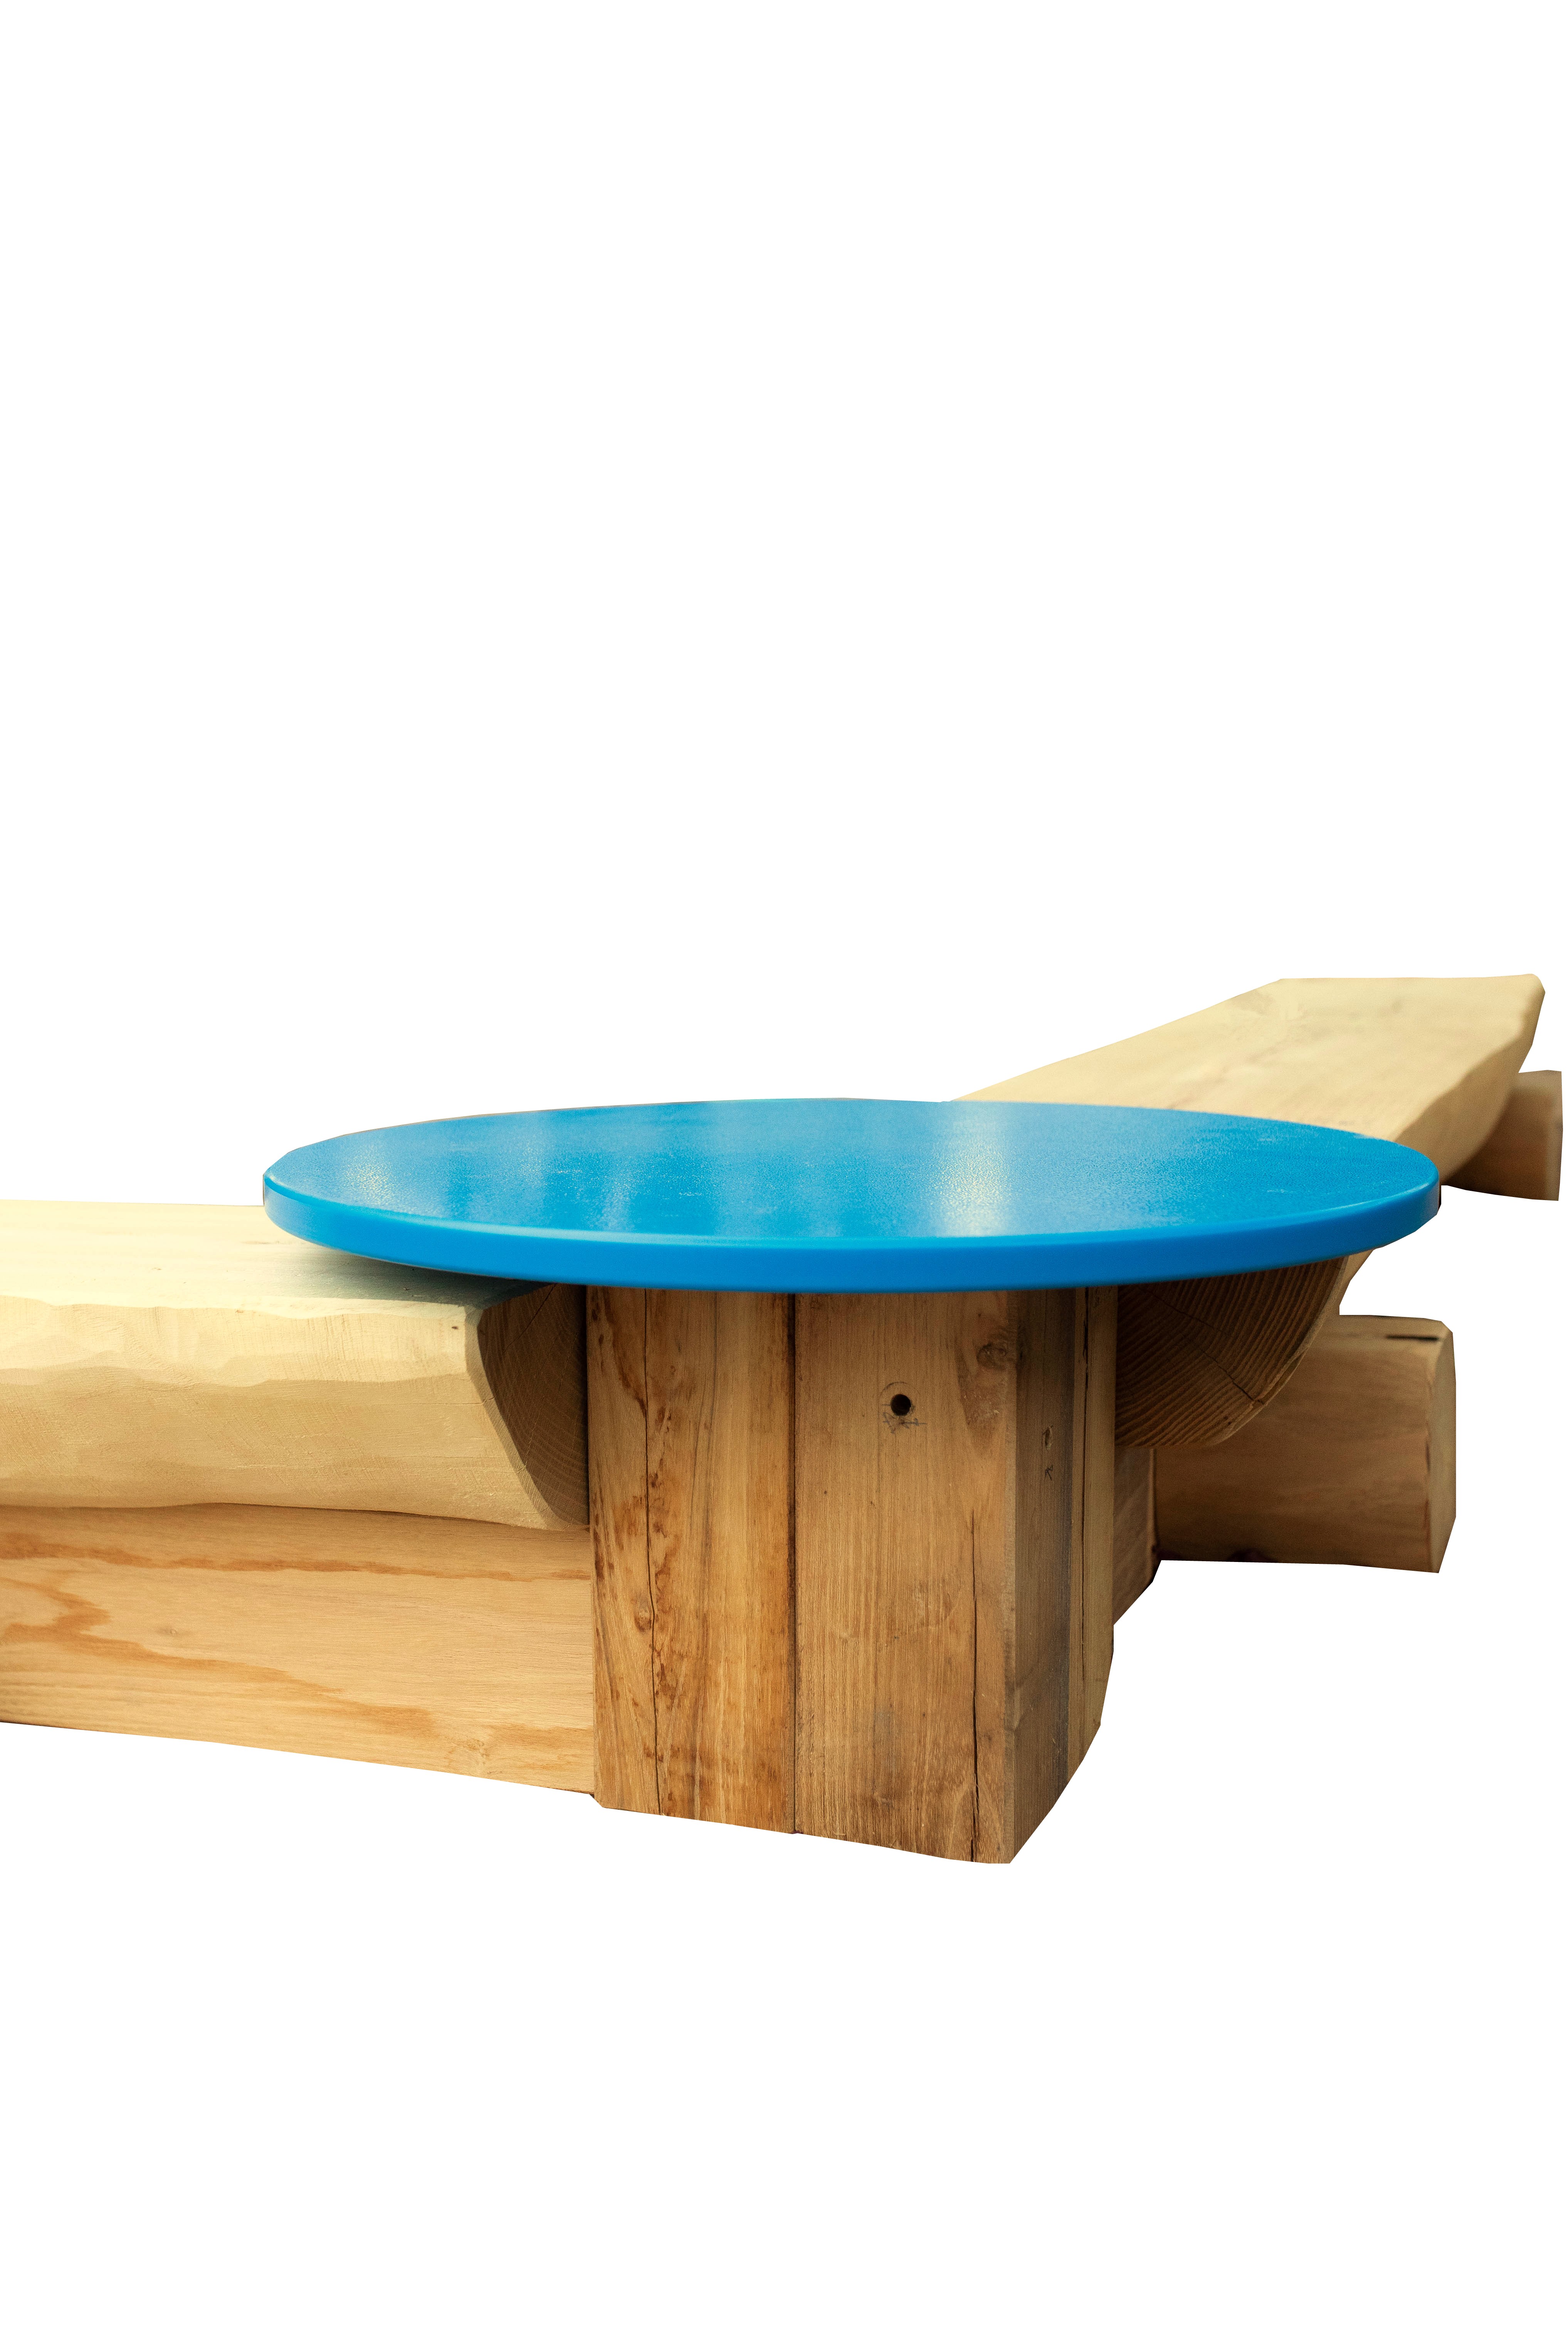 Sandkasten-Eckverbindung 60° mit Sandspieltisch, blau